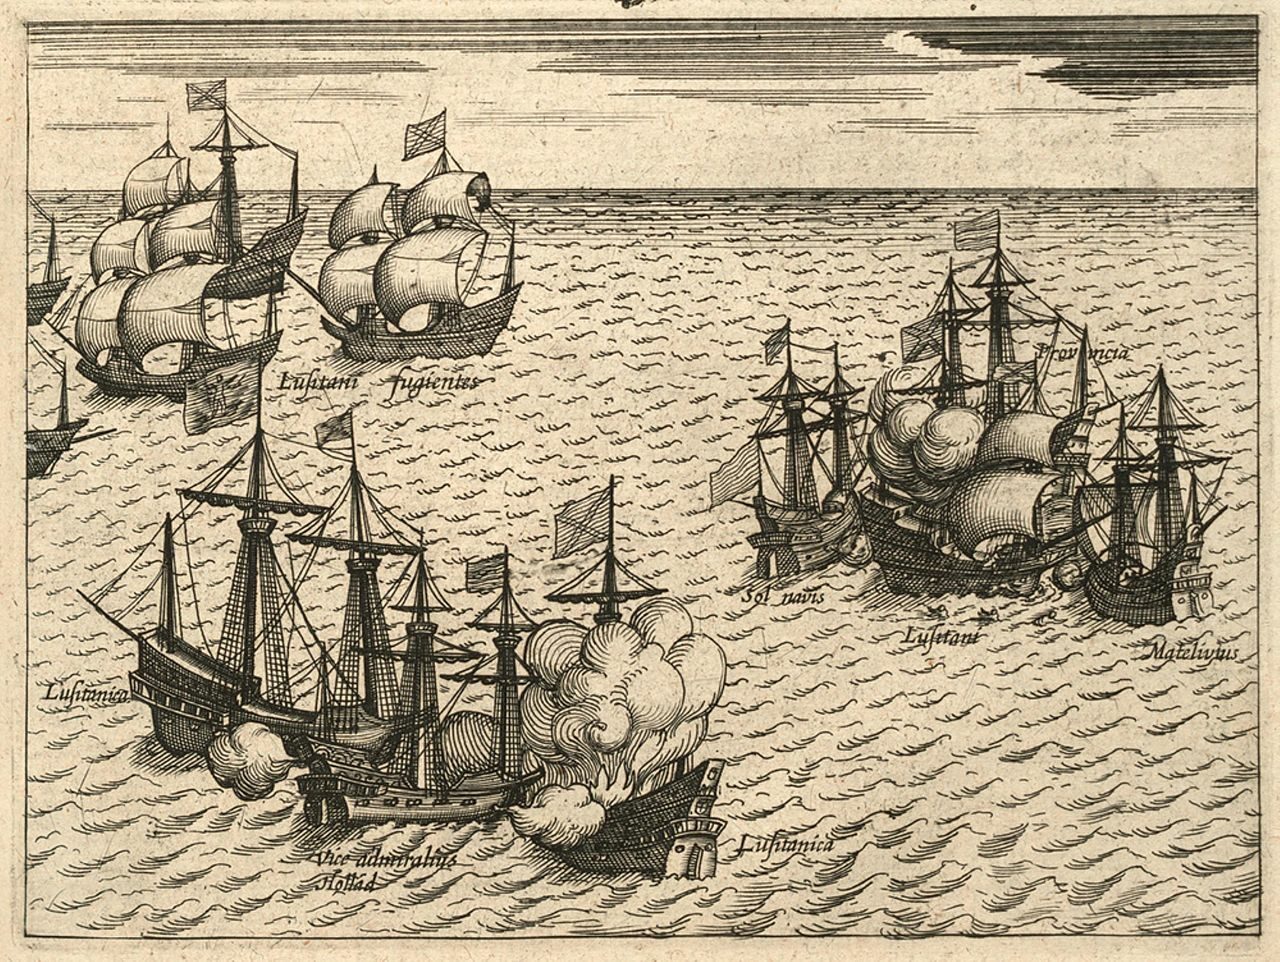 กองเรือ VOC ของดัตช์ กองเรือโปรตุเกส มะละกา